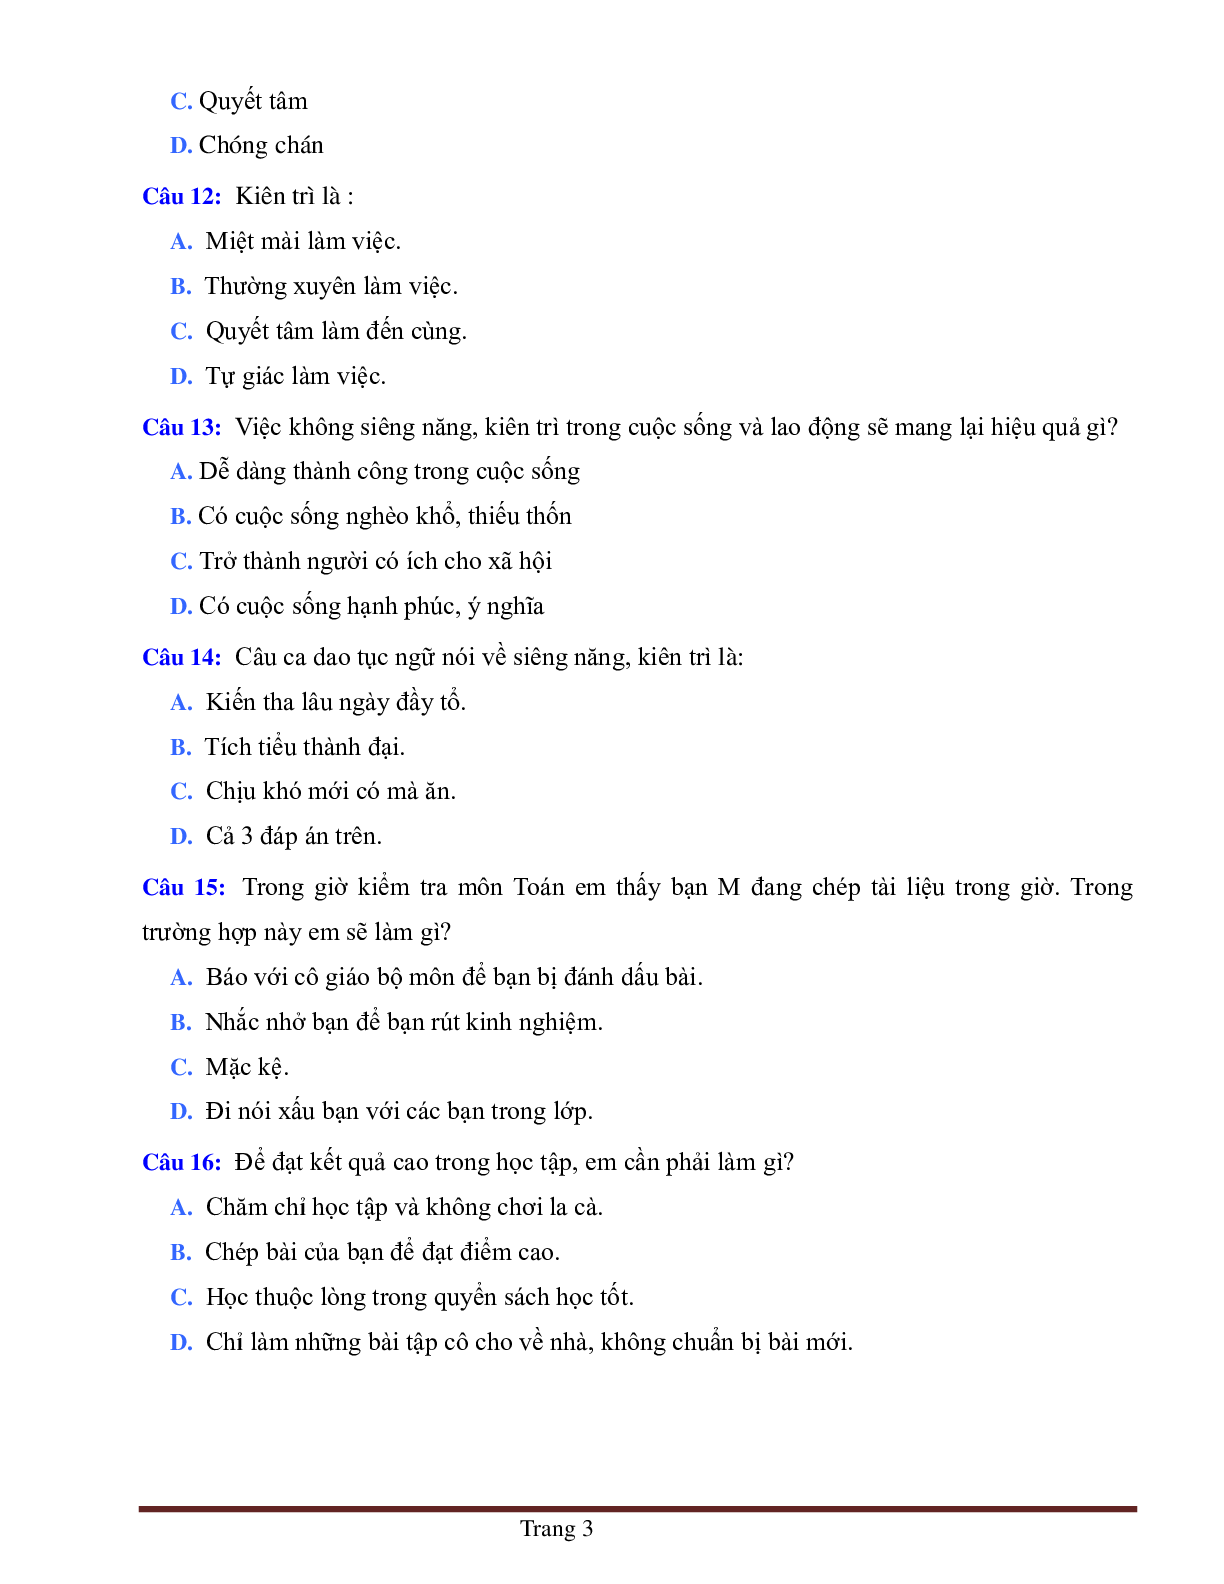 BÀI TẬP TRẮC NGHIỆM GDCD 6 BÀI 2: SIÊNG NĂNG, KIÊN TRÌ (trang 3)